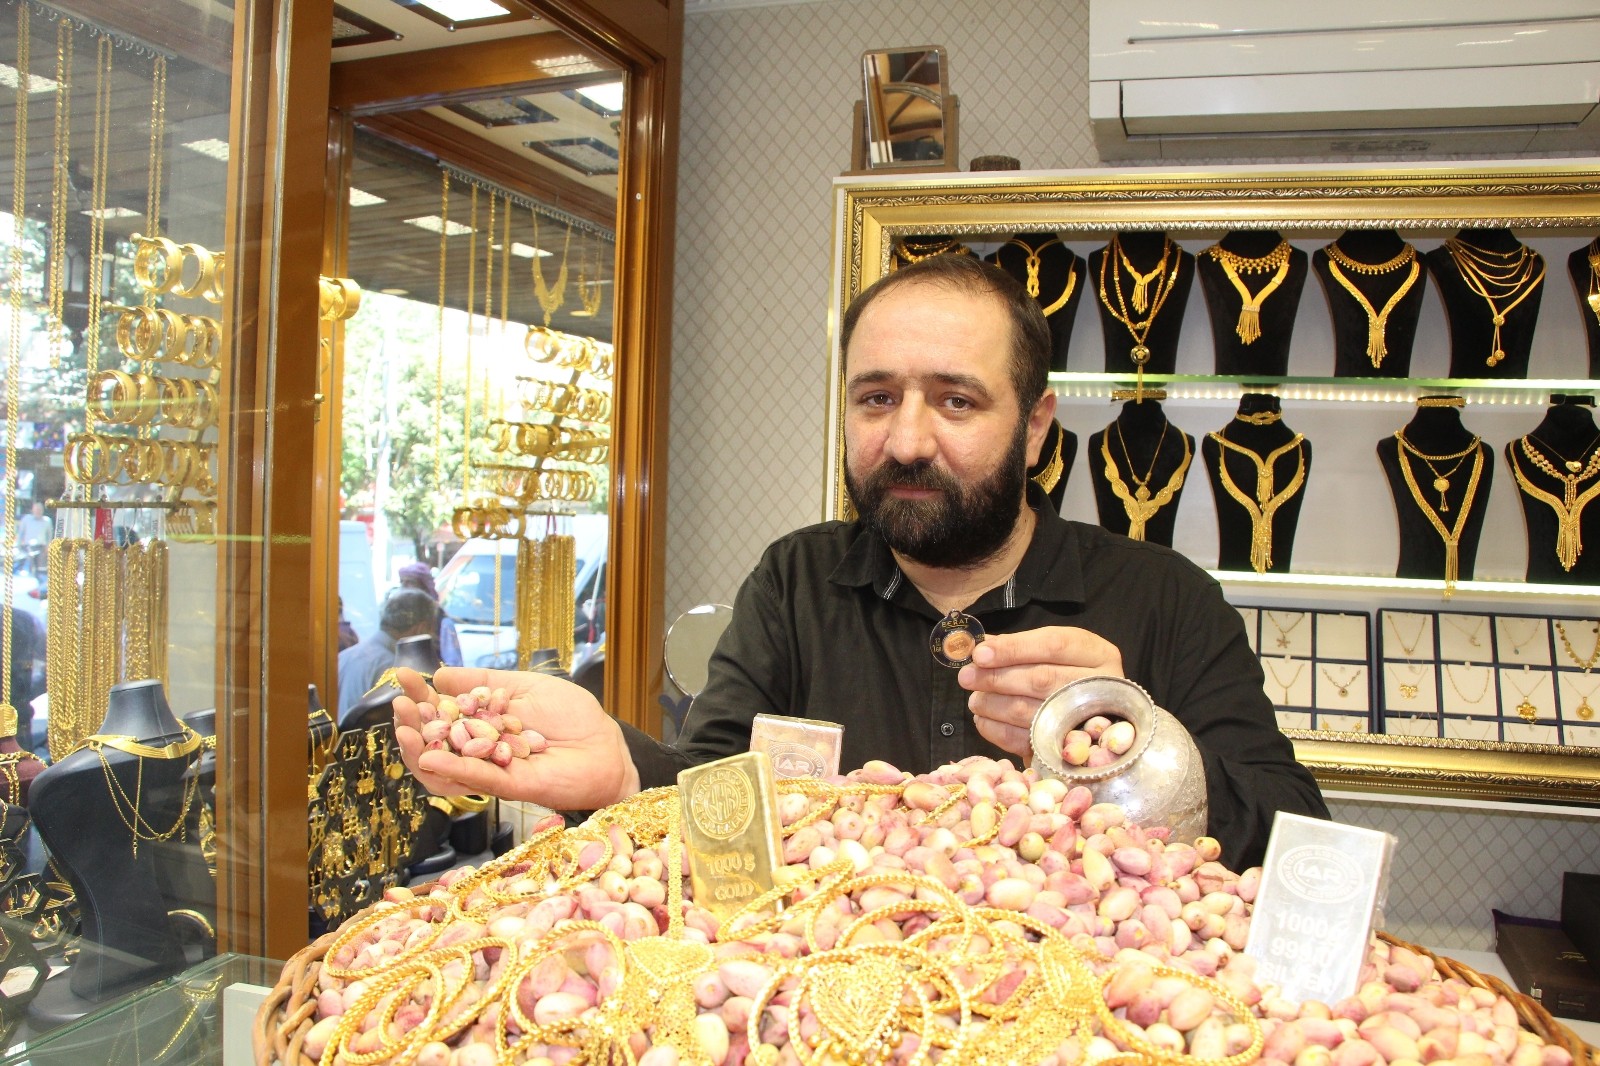 Fiyatı altınla yarışıyor: Siirt fıstığı iç piyasada 90, dış piyasada ise 120 liraya satılıyor #siirt